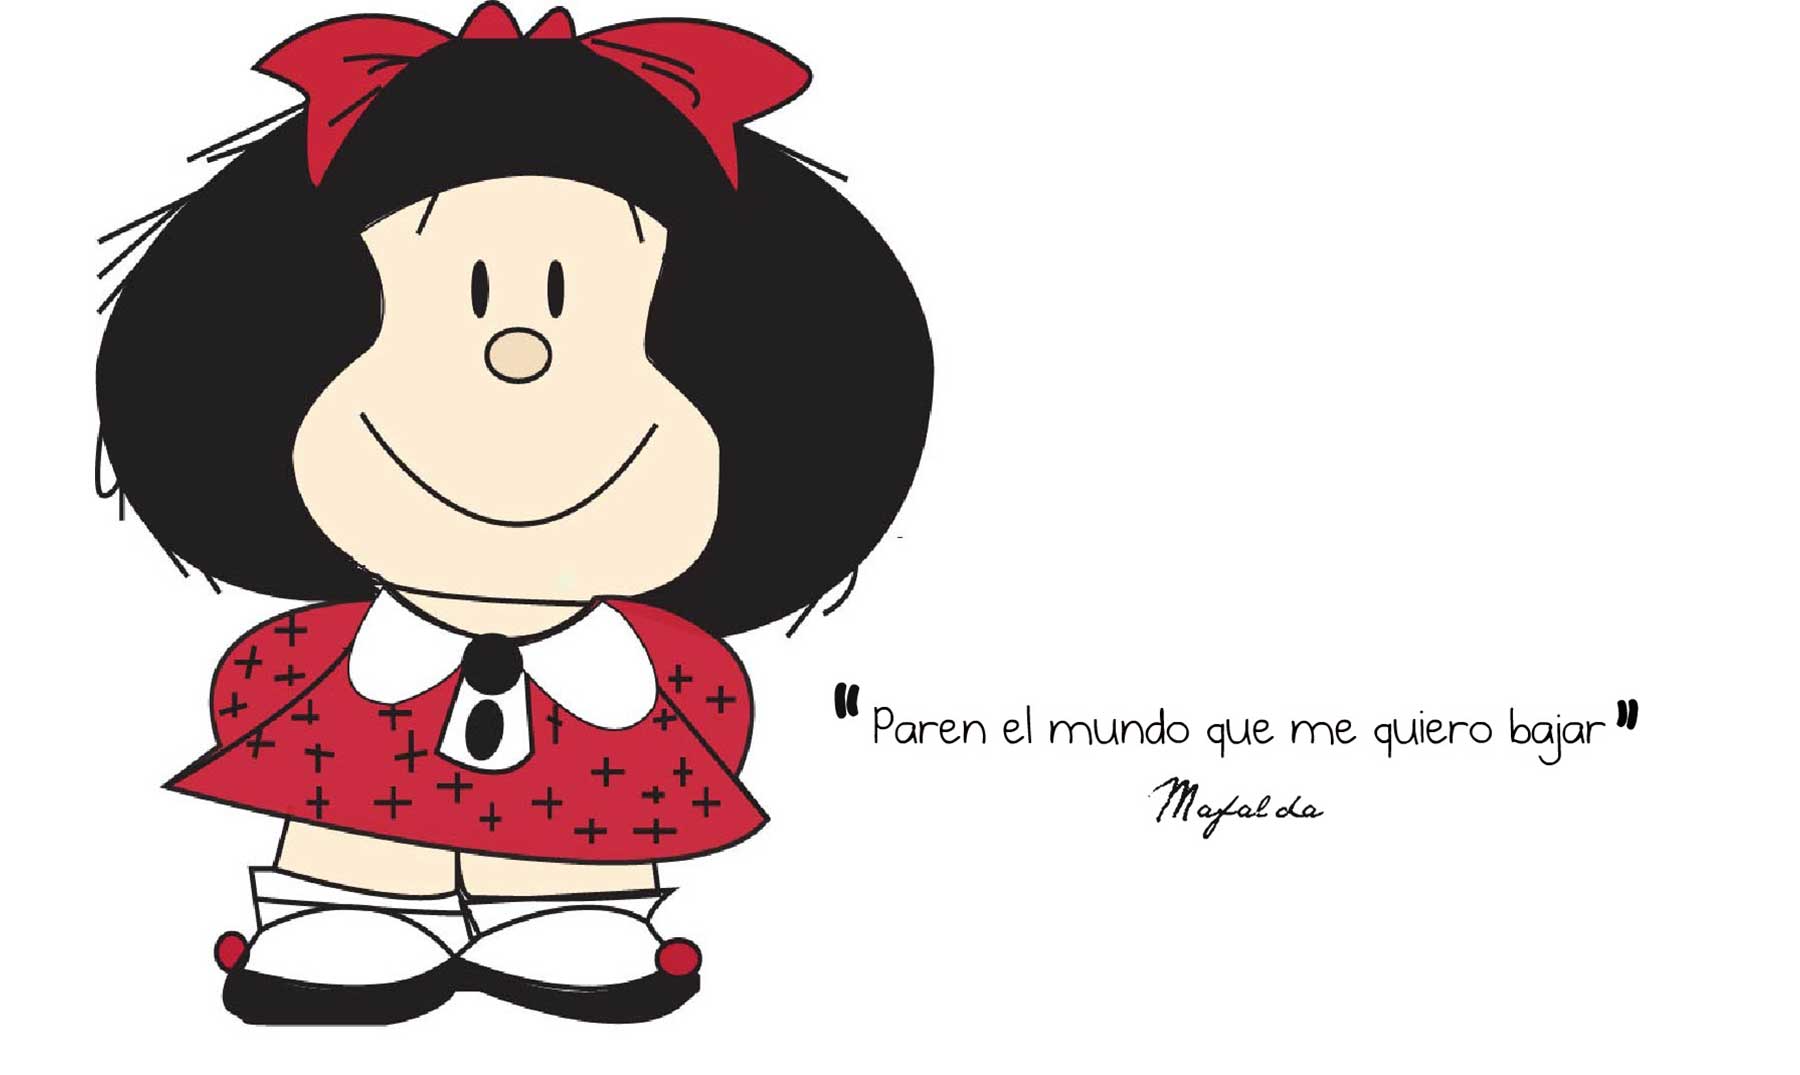 Frases de Mafalda, El problema es que hay más gente interesada que gente interesante.